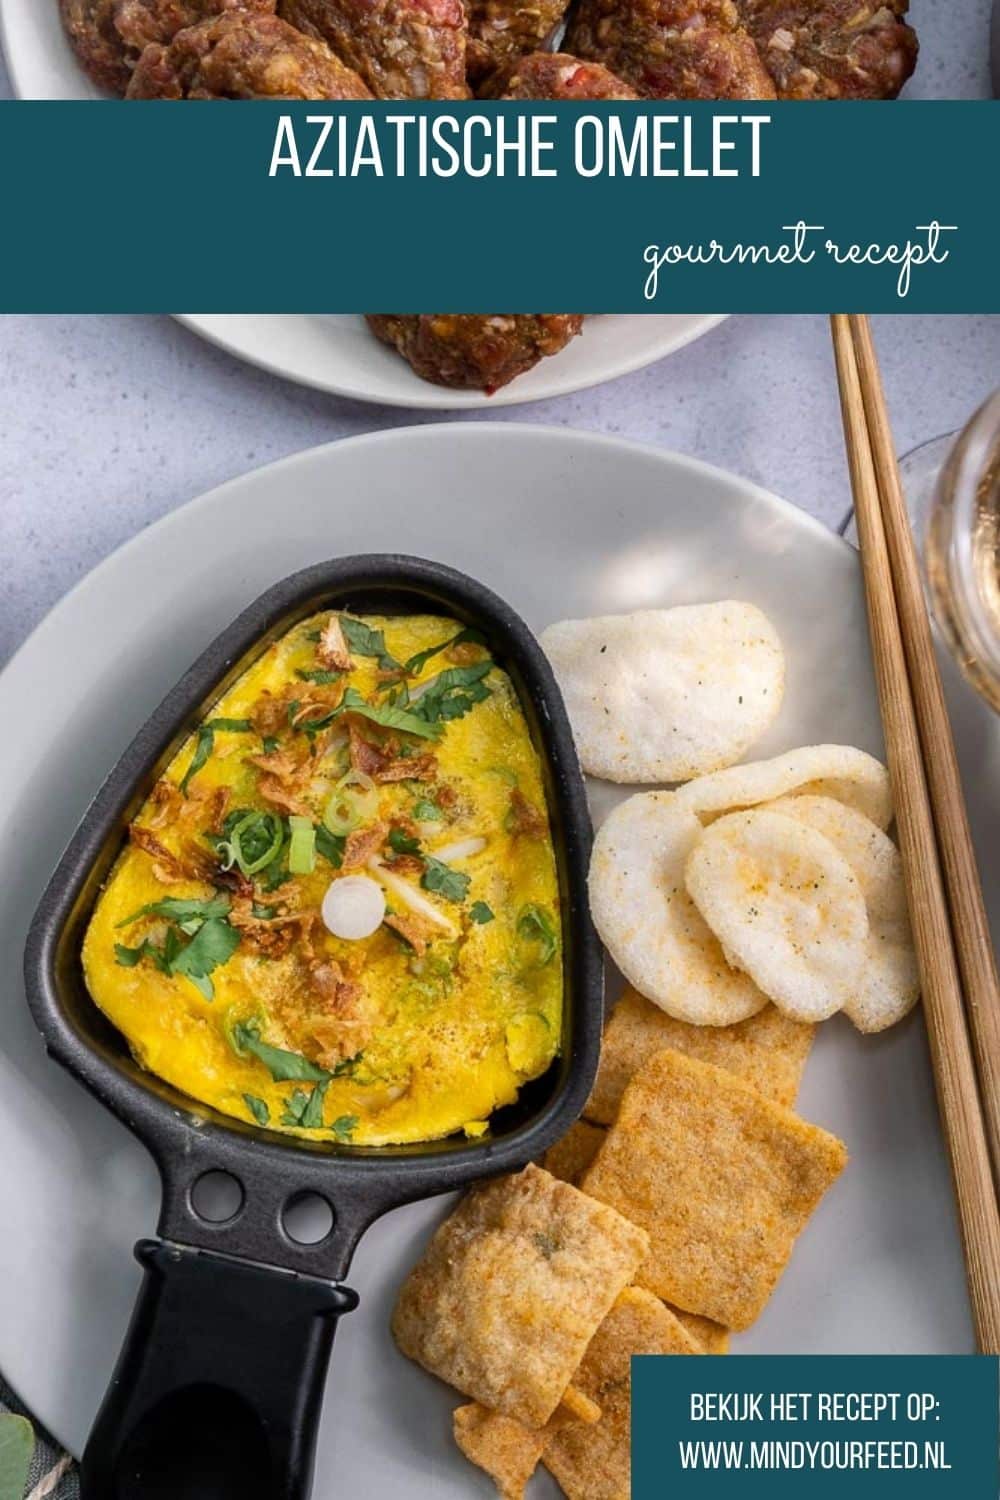 aziatische omelet gourmet recept, Oosterse omelet, omelet recepten gourmet, eieren gourmetten, luxe gourmet recepten